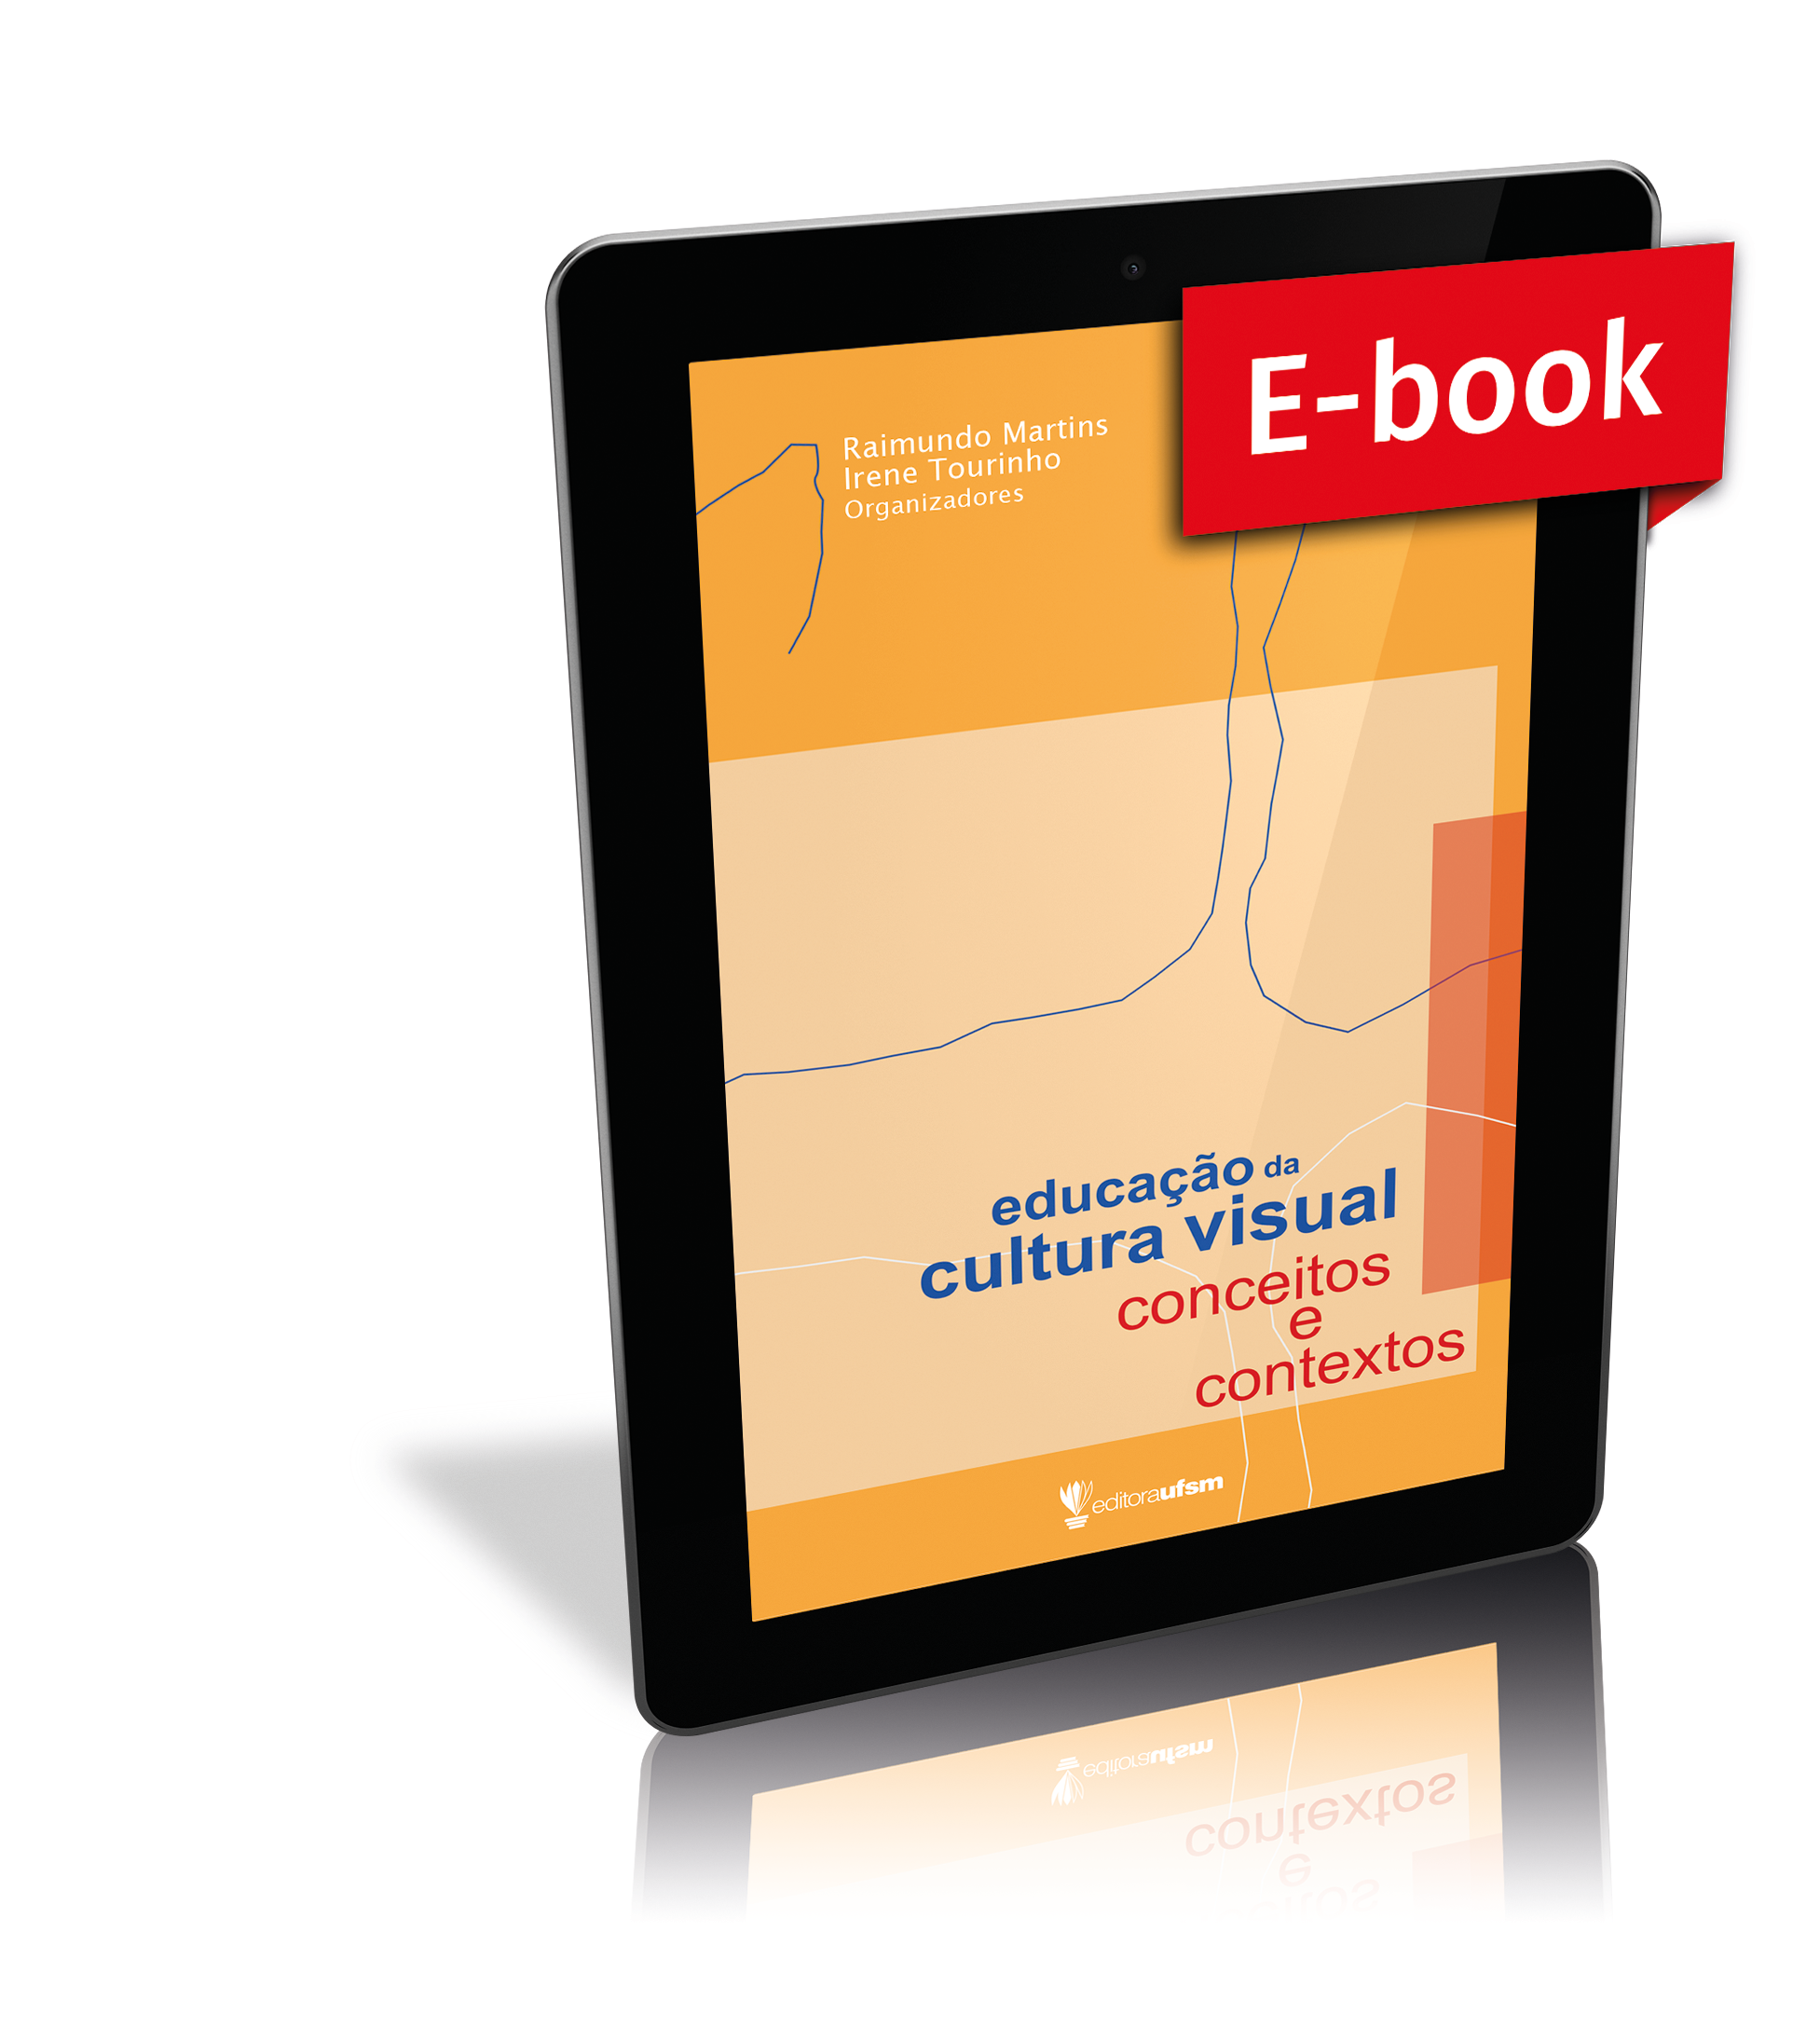 Capa do e-book Educação da Cultura Visual: conceitos e contextos